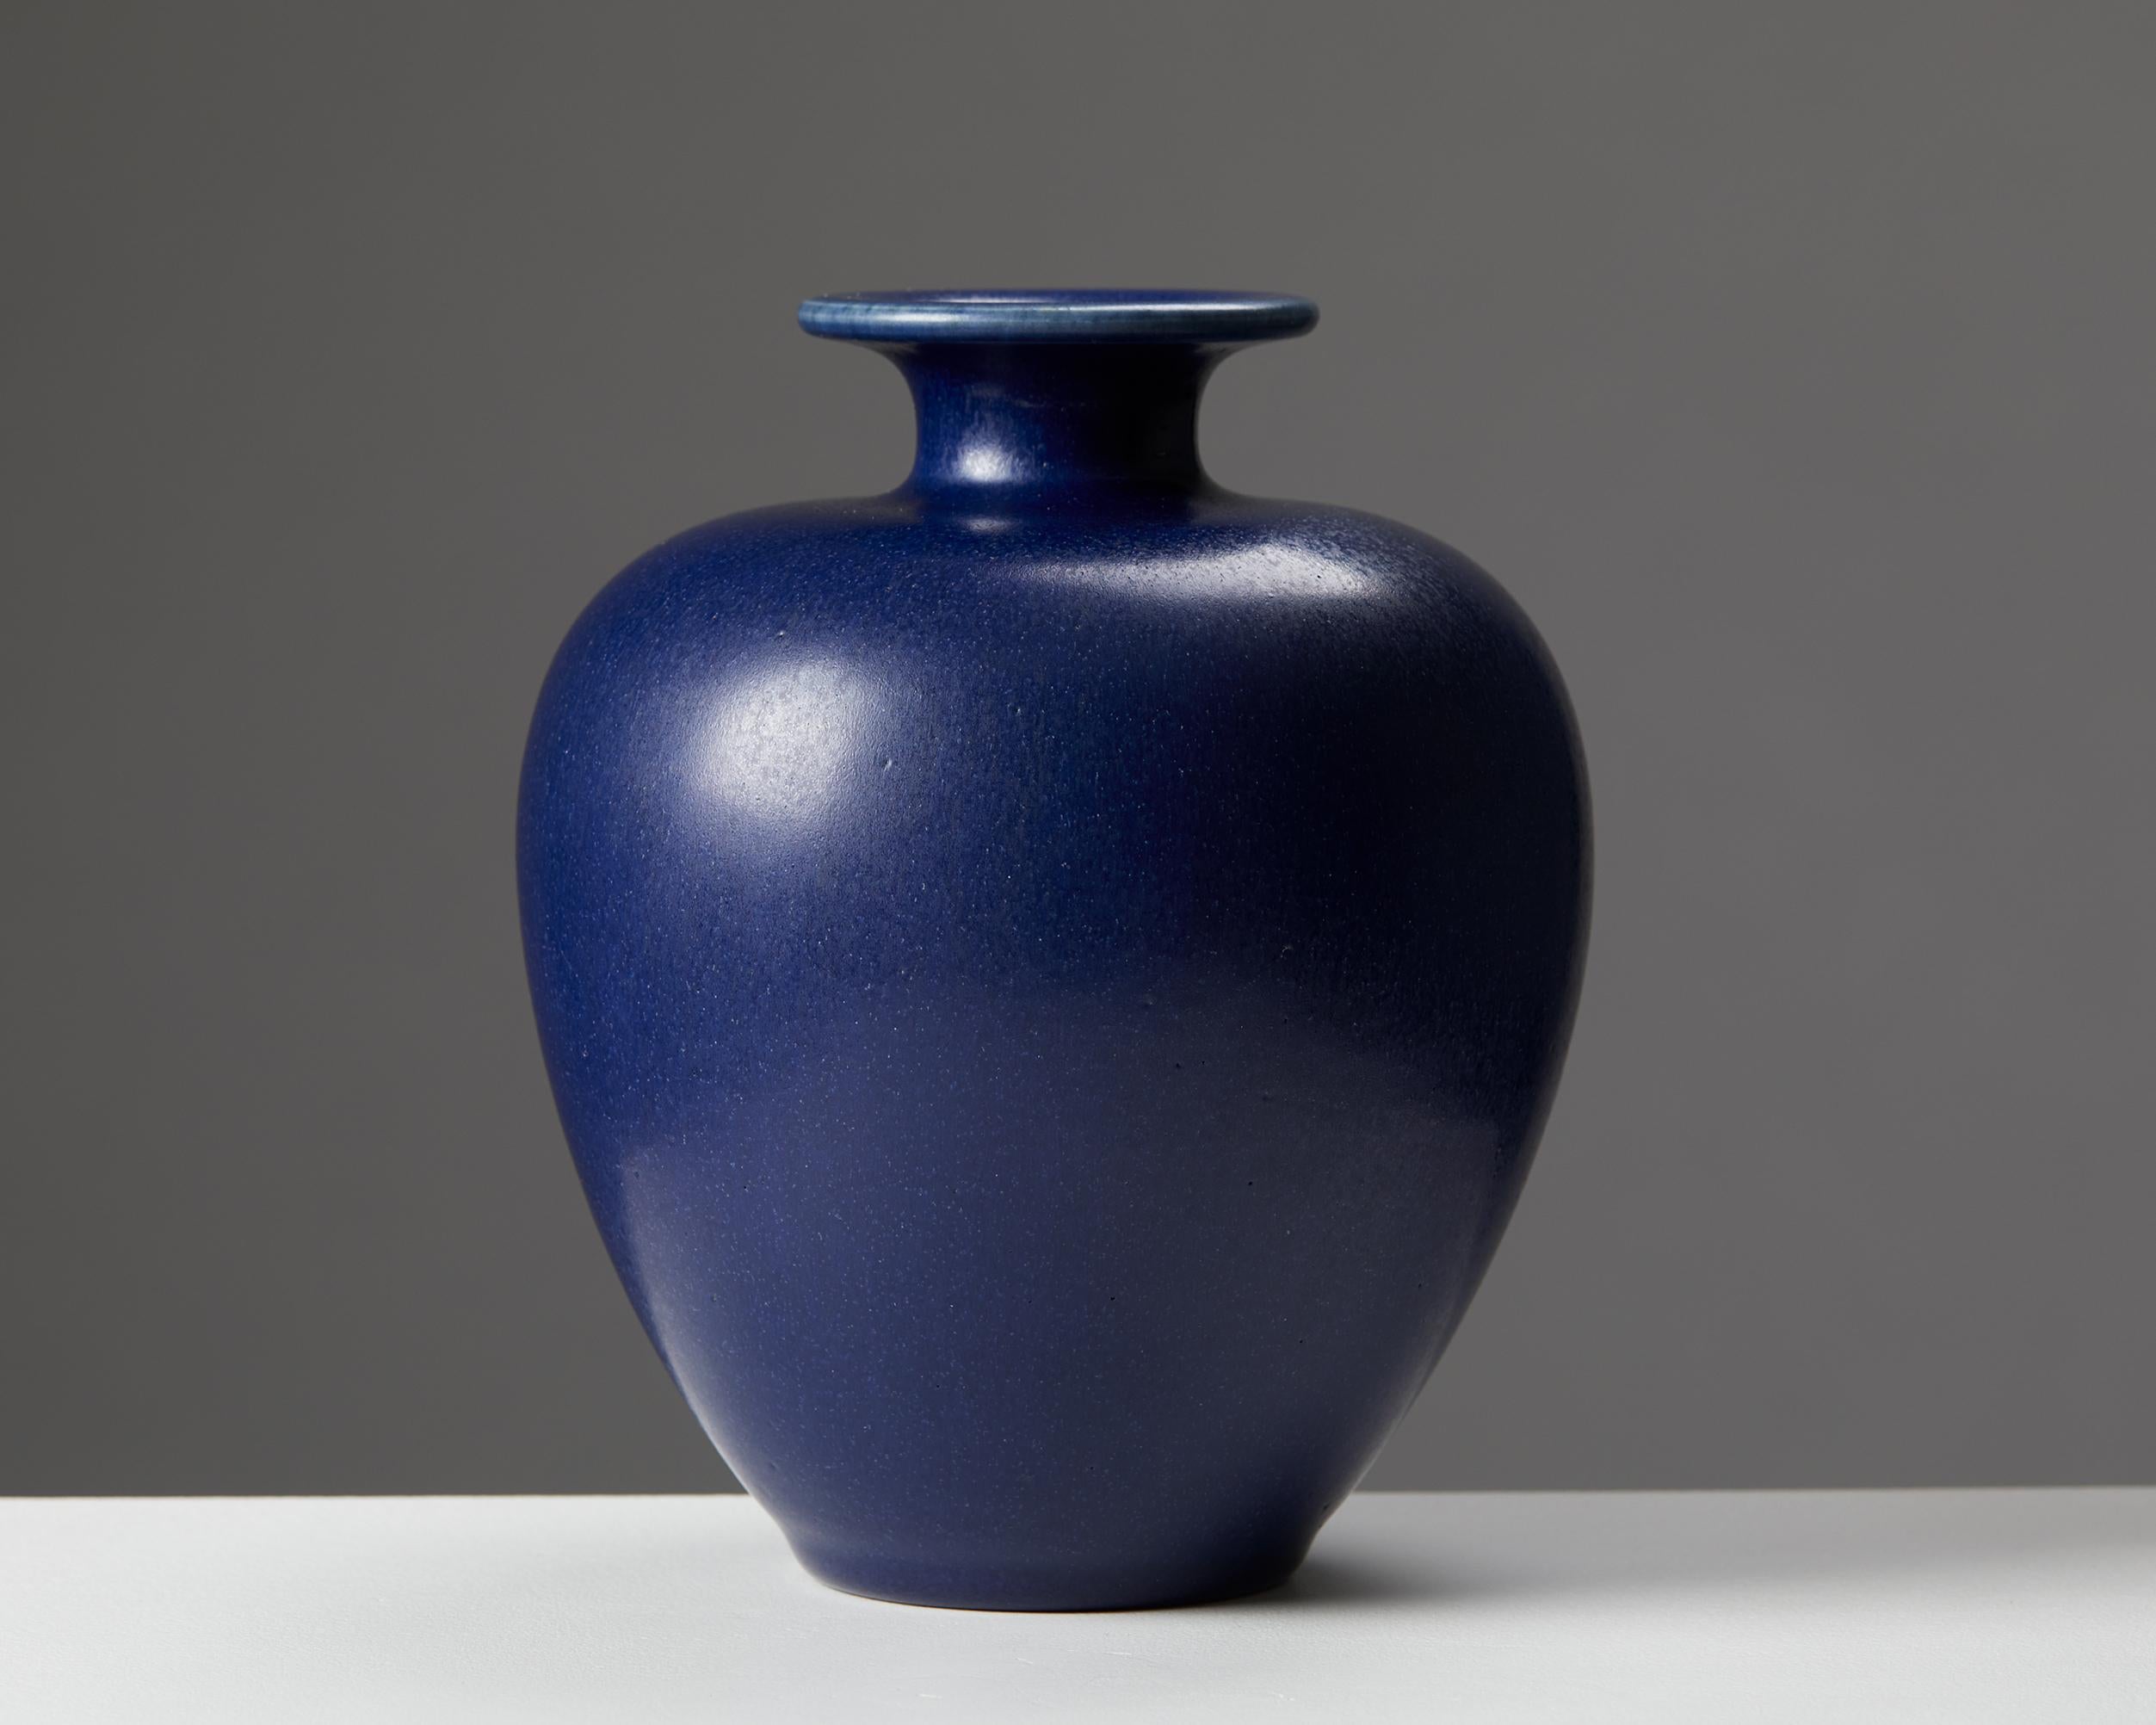 Vase d'Erich & Ingrid Triller,
Suède, années 1950.

Signé.

Grès.

Dimensions :
H : 17,5 cm / 7